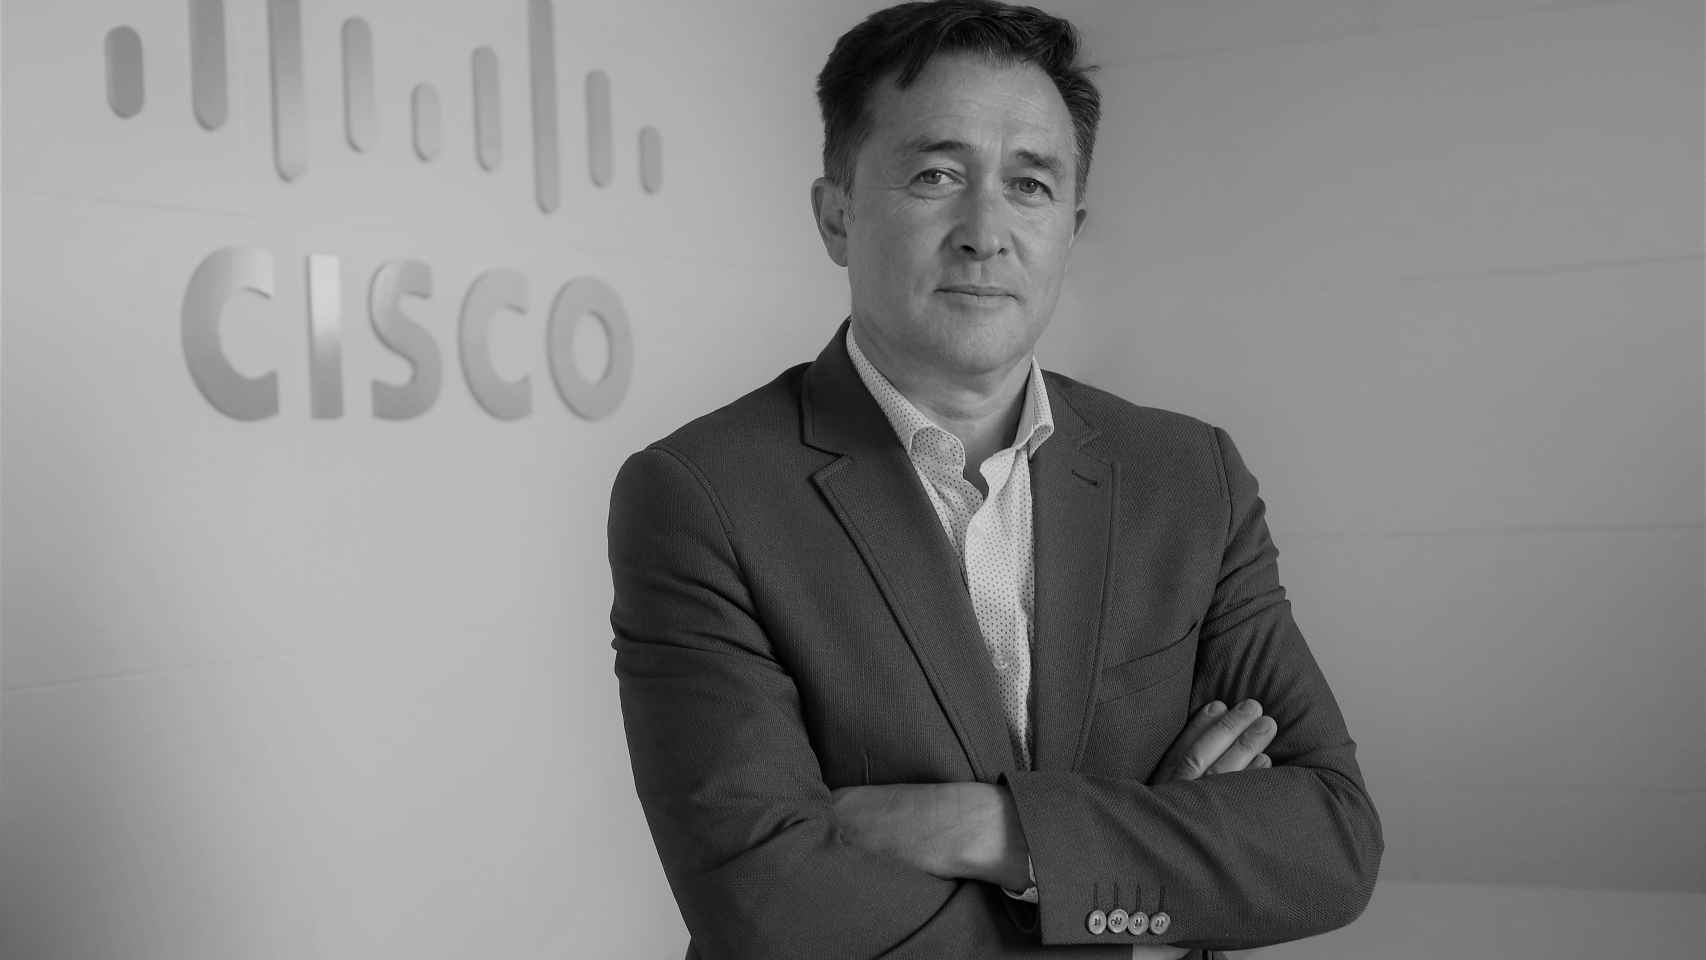 Andreu Vilamitjana, Director General de Cisco España.